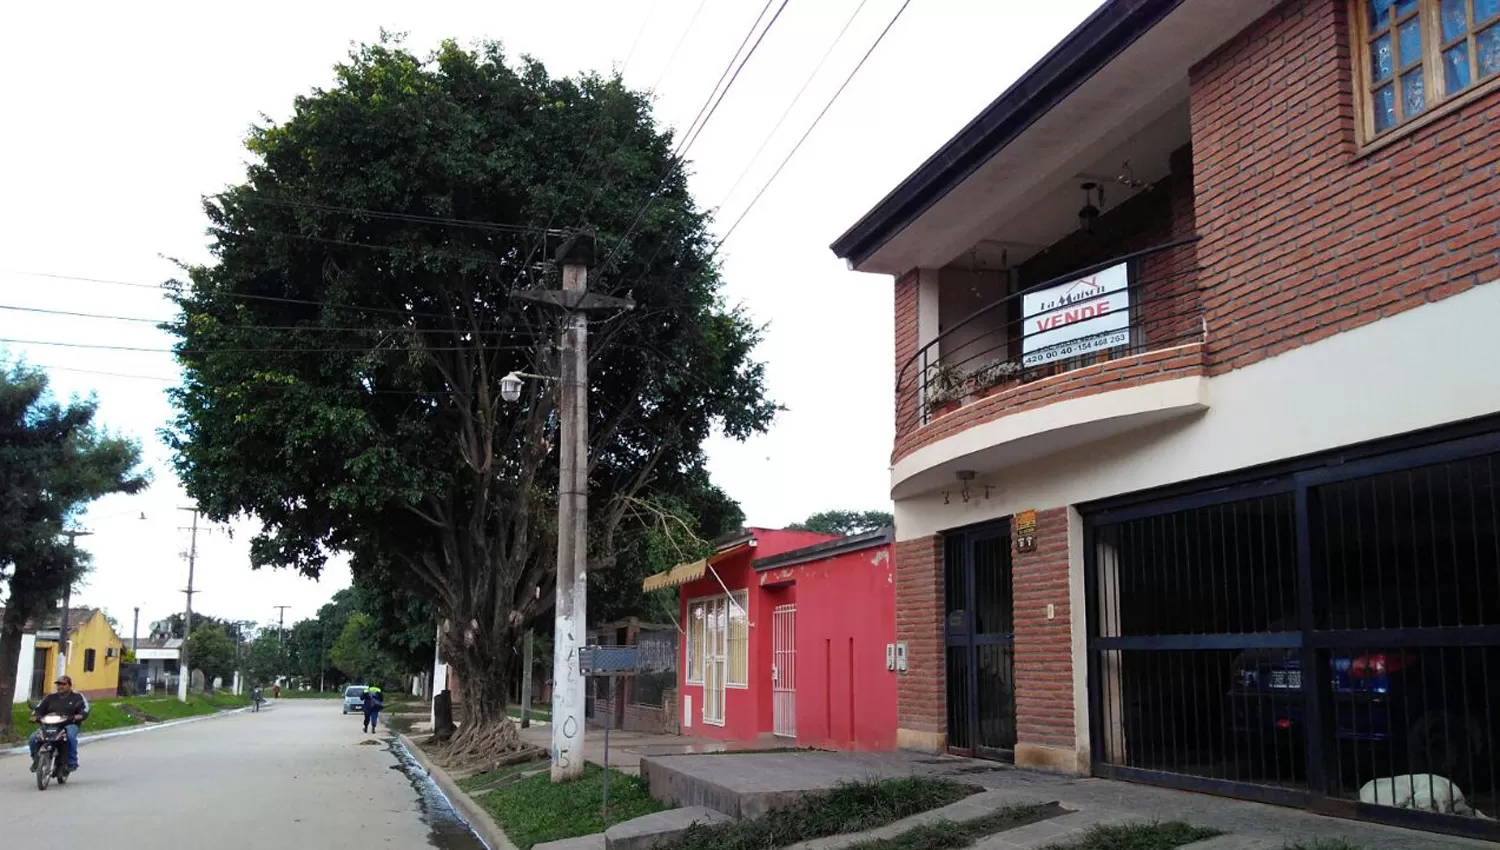 EN BARRIO OESTE III. La víctima vive junto a sus padres en Villa Carmela, a pocos kilómetros al noroeste de la capital tucumana. LA GACETA / FOTO DE JORGE OLMOS SGROSSO VIA MOVIL